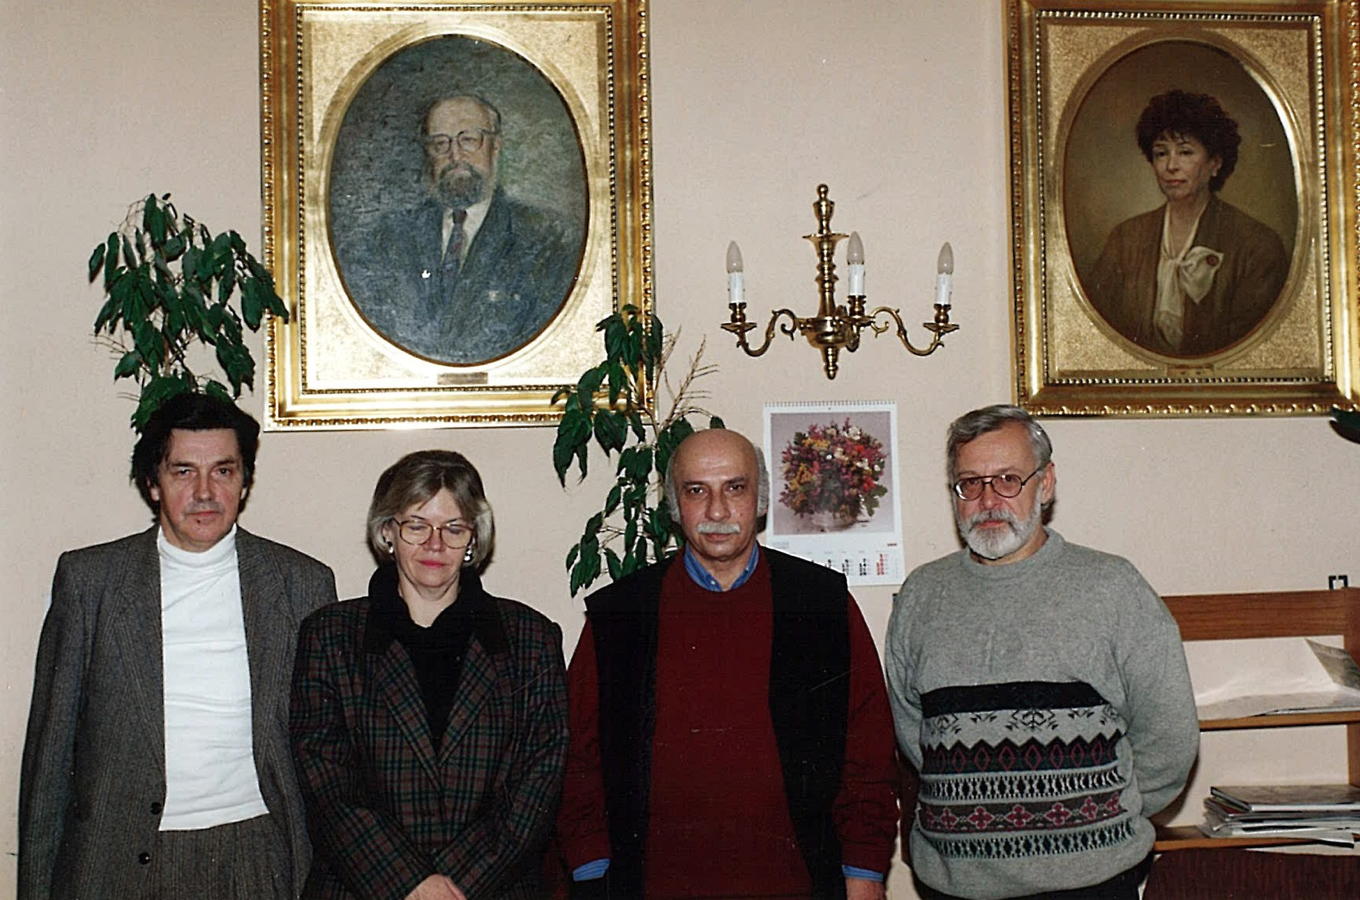 Z Teresą Malecką, Giją Kanczelim i Krzysztofem Drobą, 1995